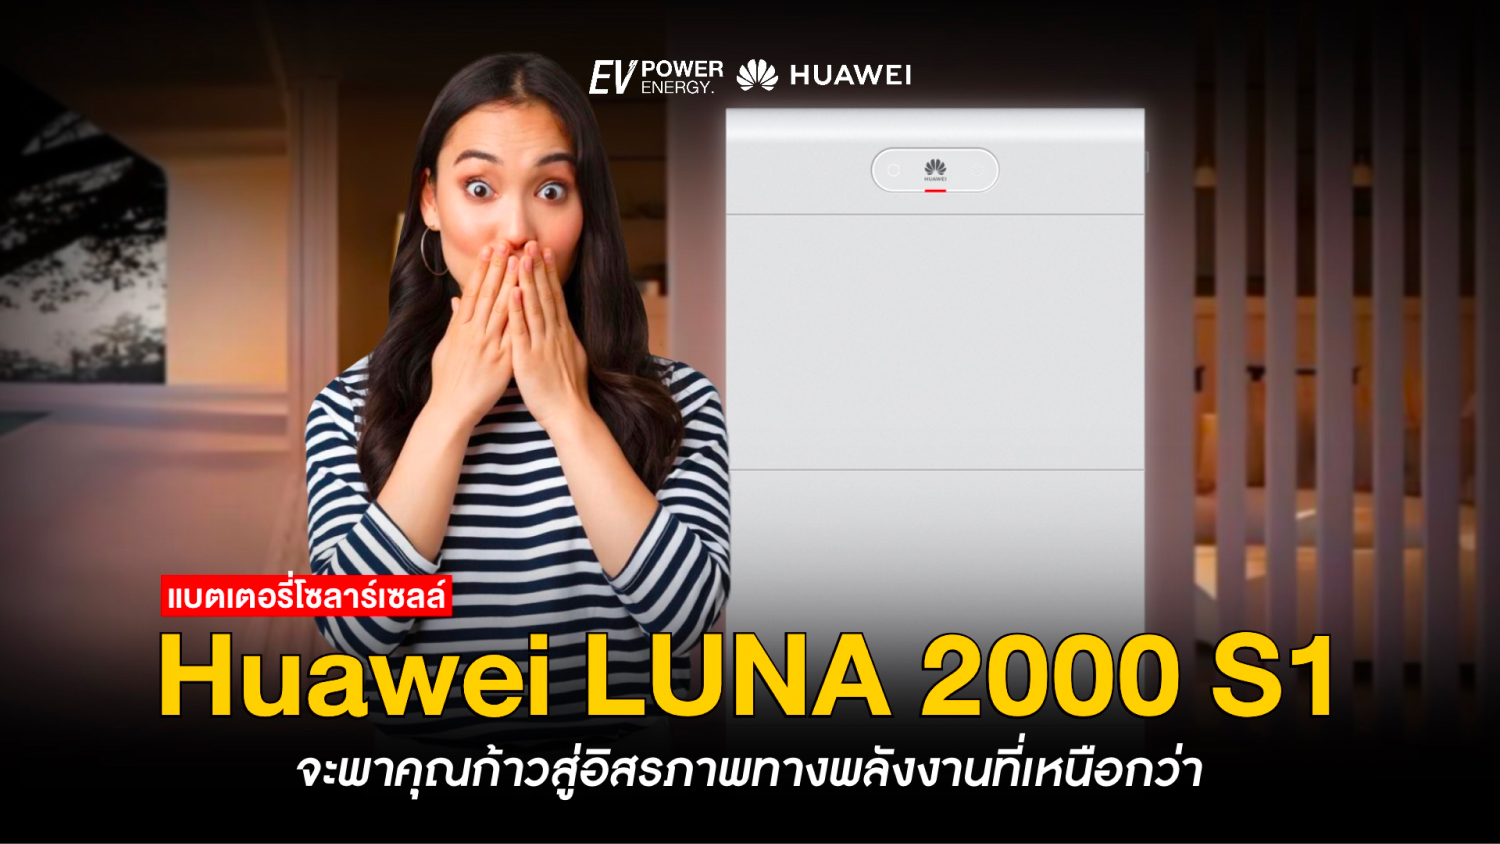 Huawei LUNA 2000 S1 ก้าวสู่อิสรภาพทางพลังงานที่เหนือกว่า